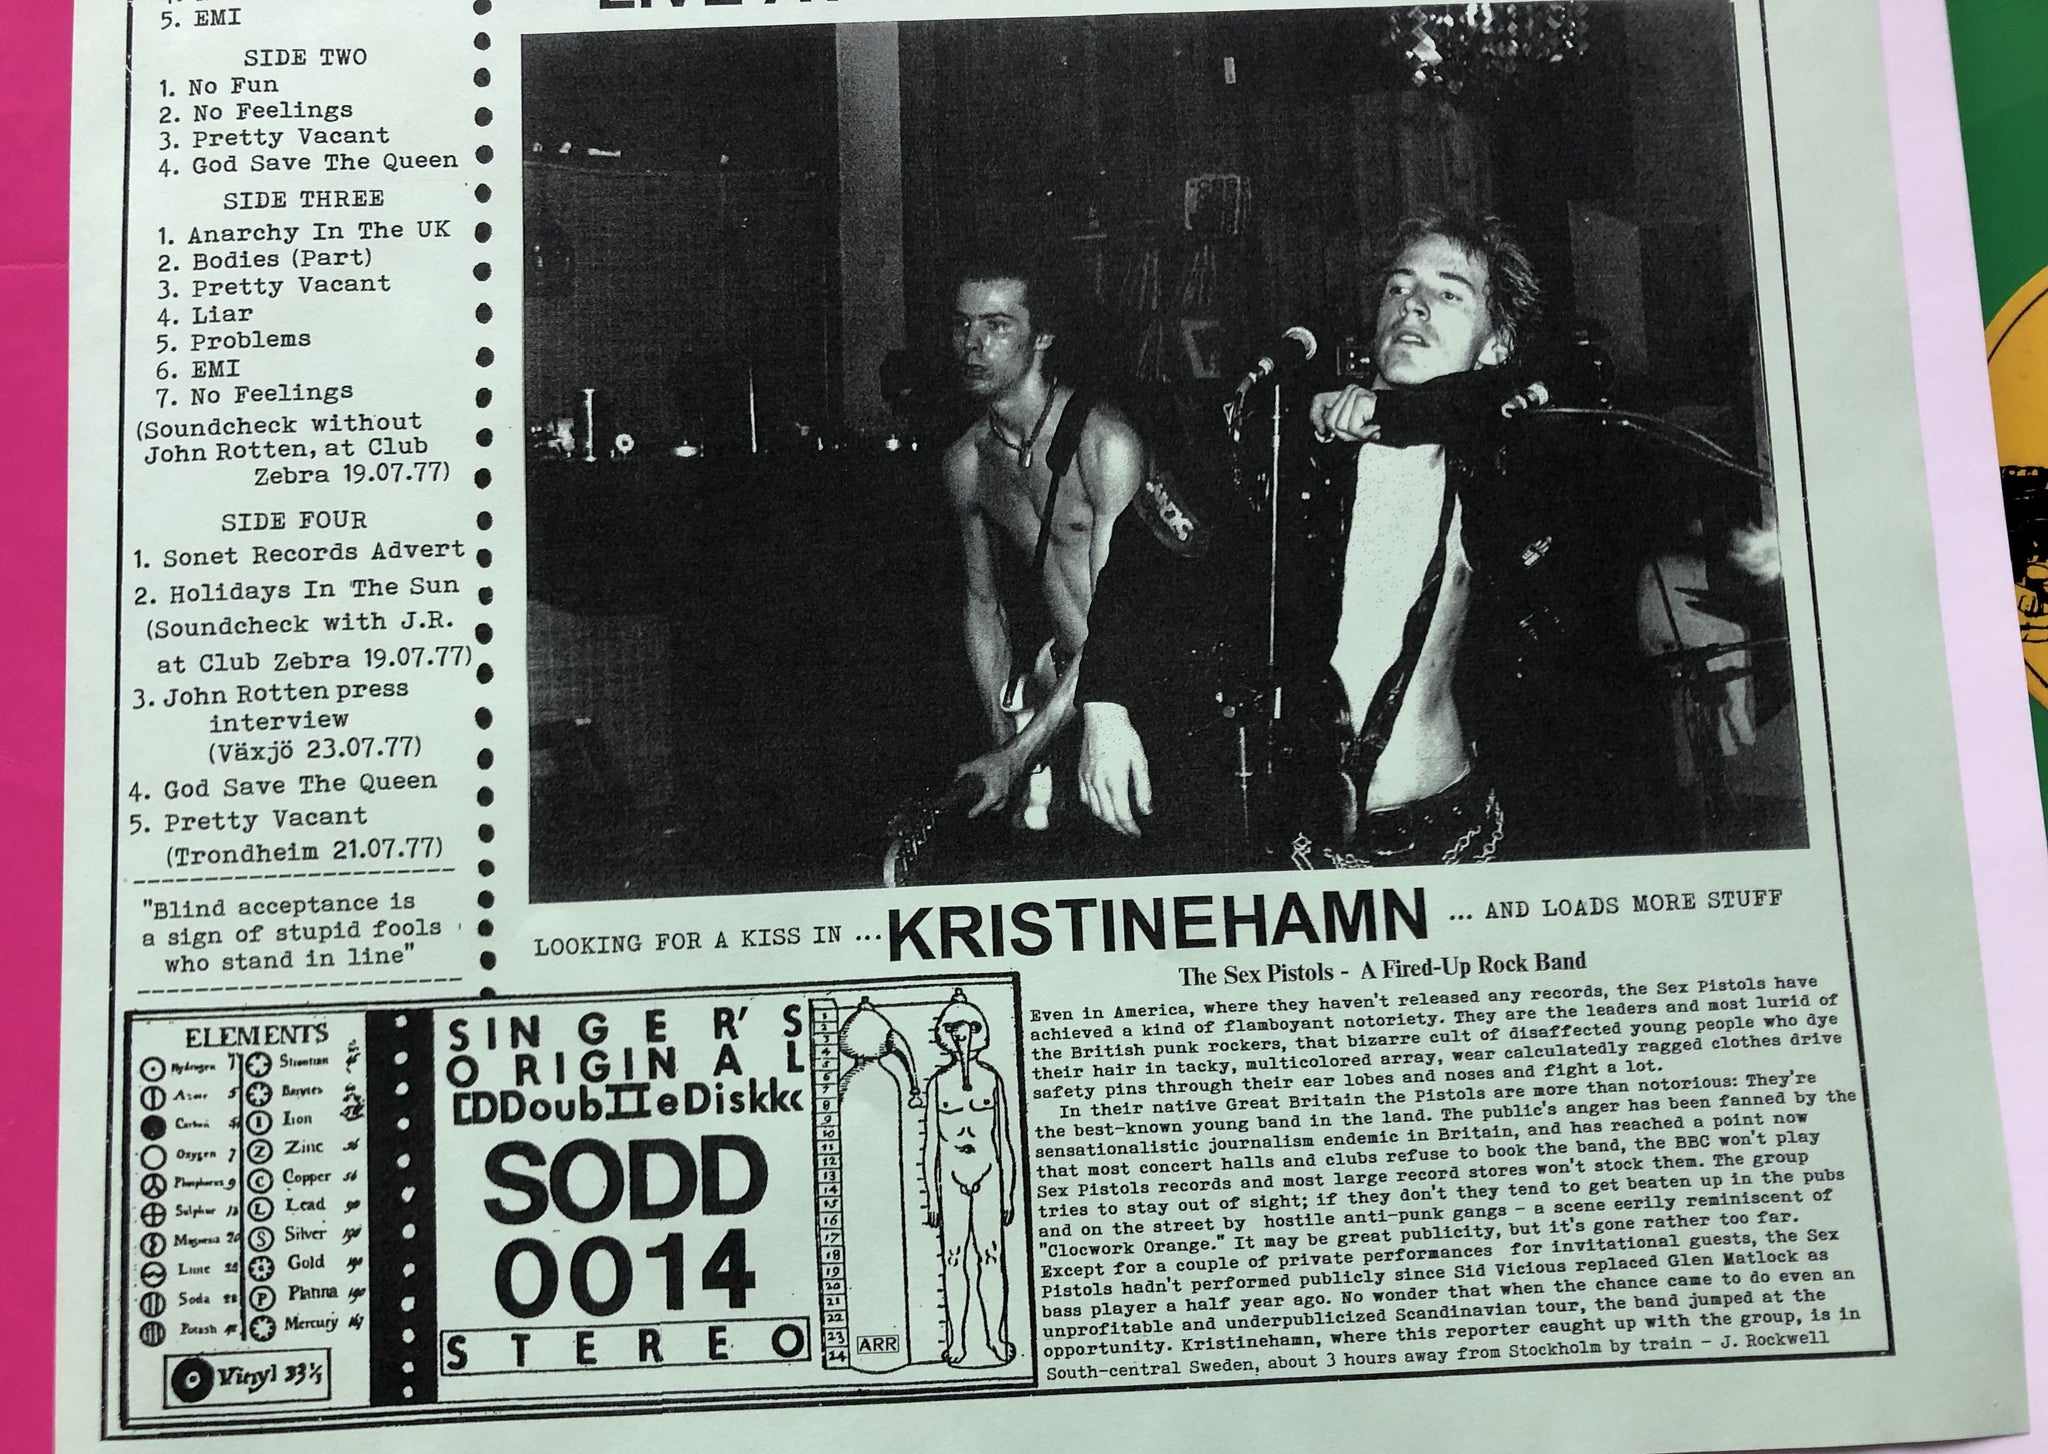 Sex Pistols Looking For A Kiss In Kristinehamn Lp 1977 On Green Viny Punkrockdisco 